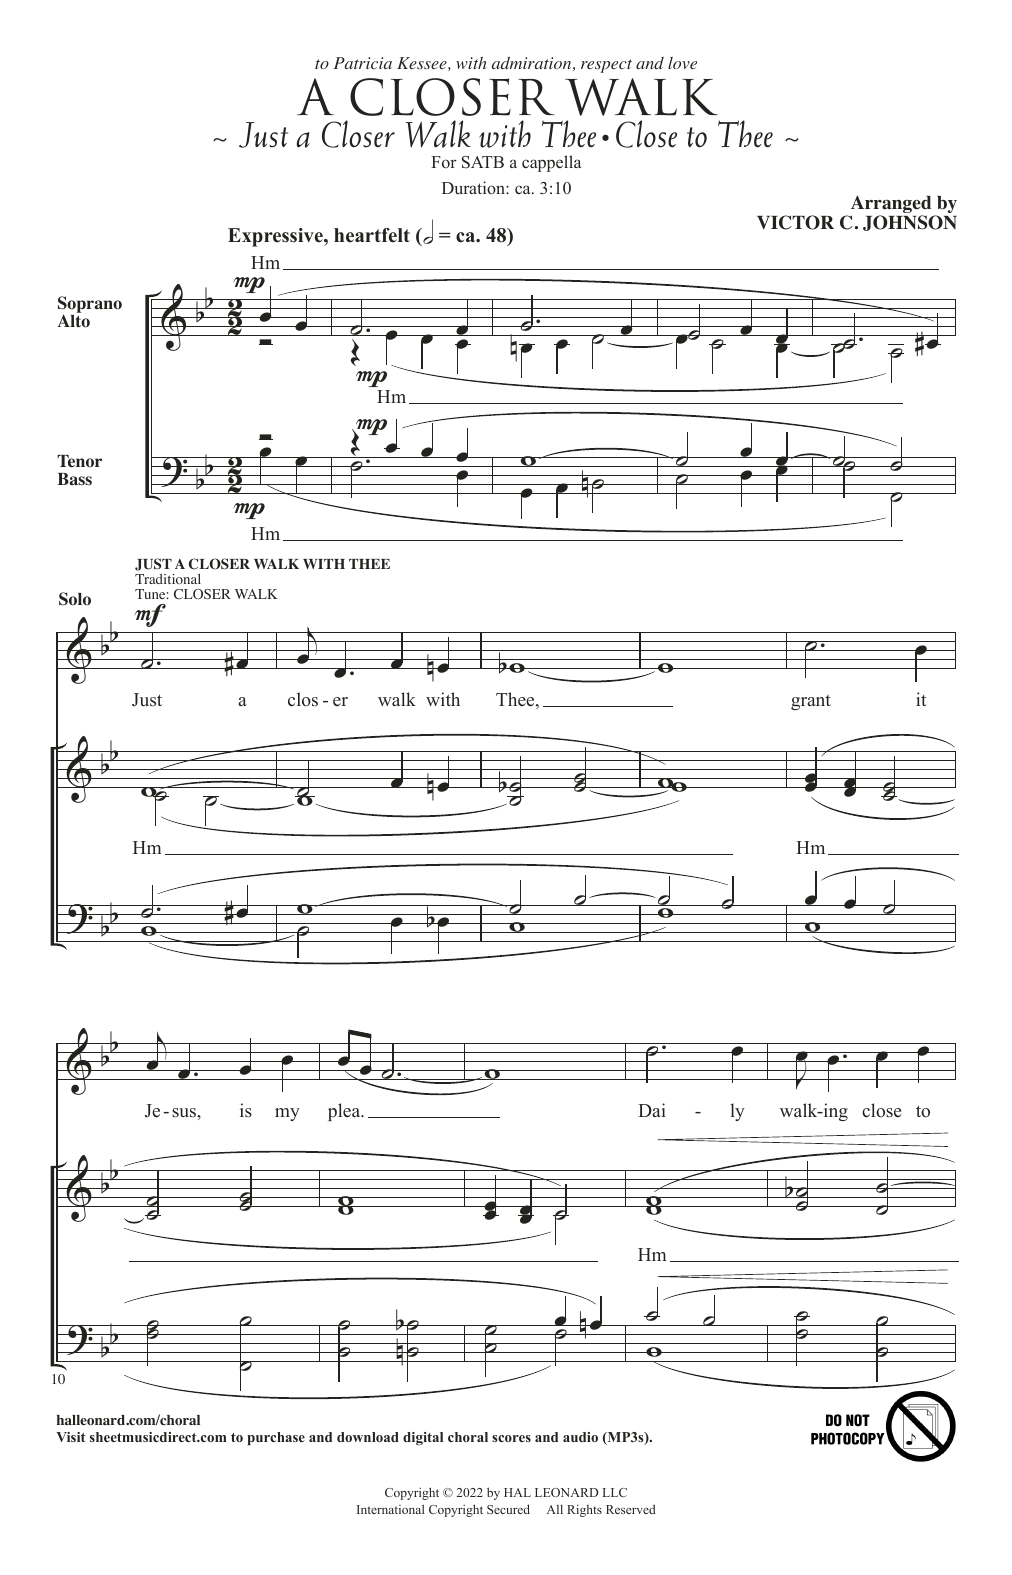 A Closer Walk (SATB Choir) von Victor C. Johnson